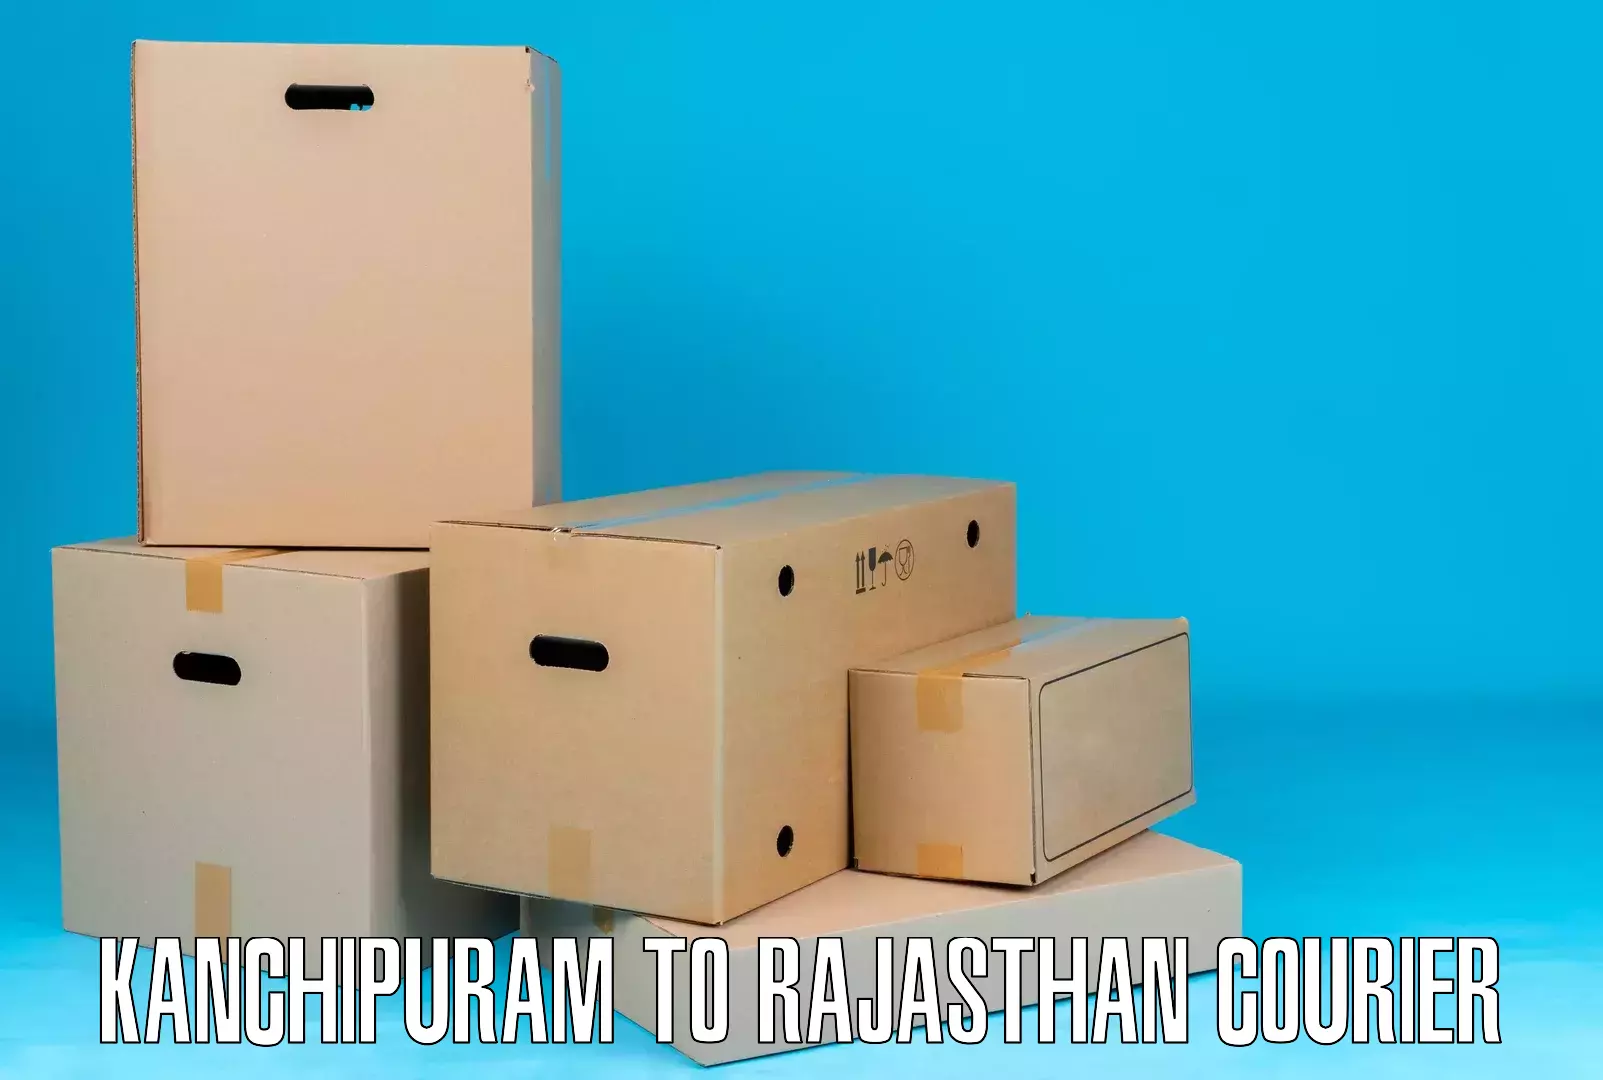 Ground shipping Kanchipuram to Rajasthan